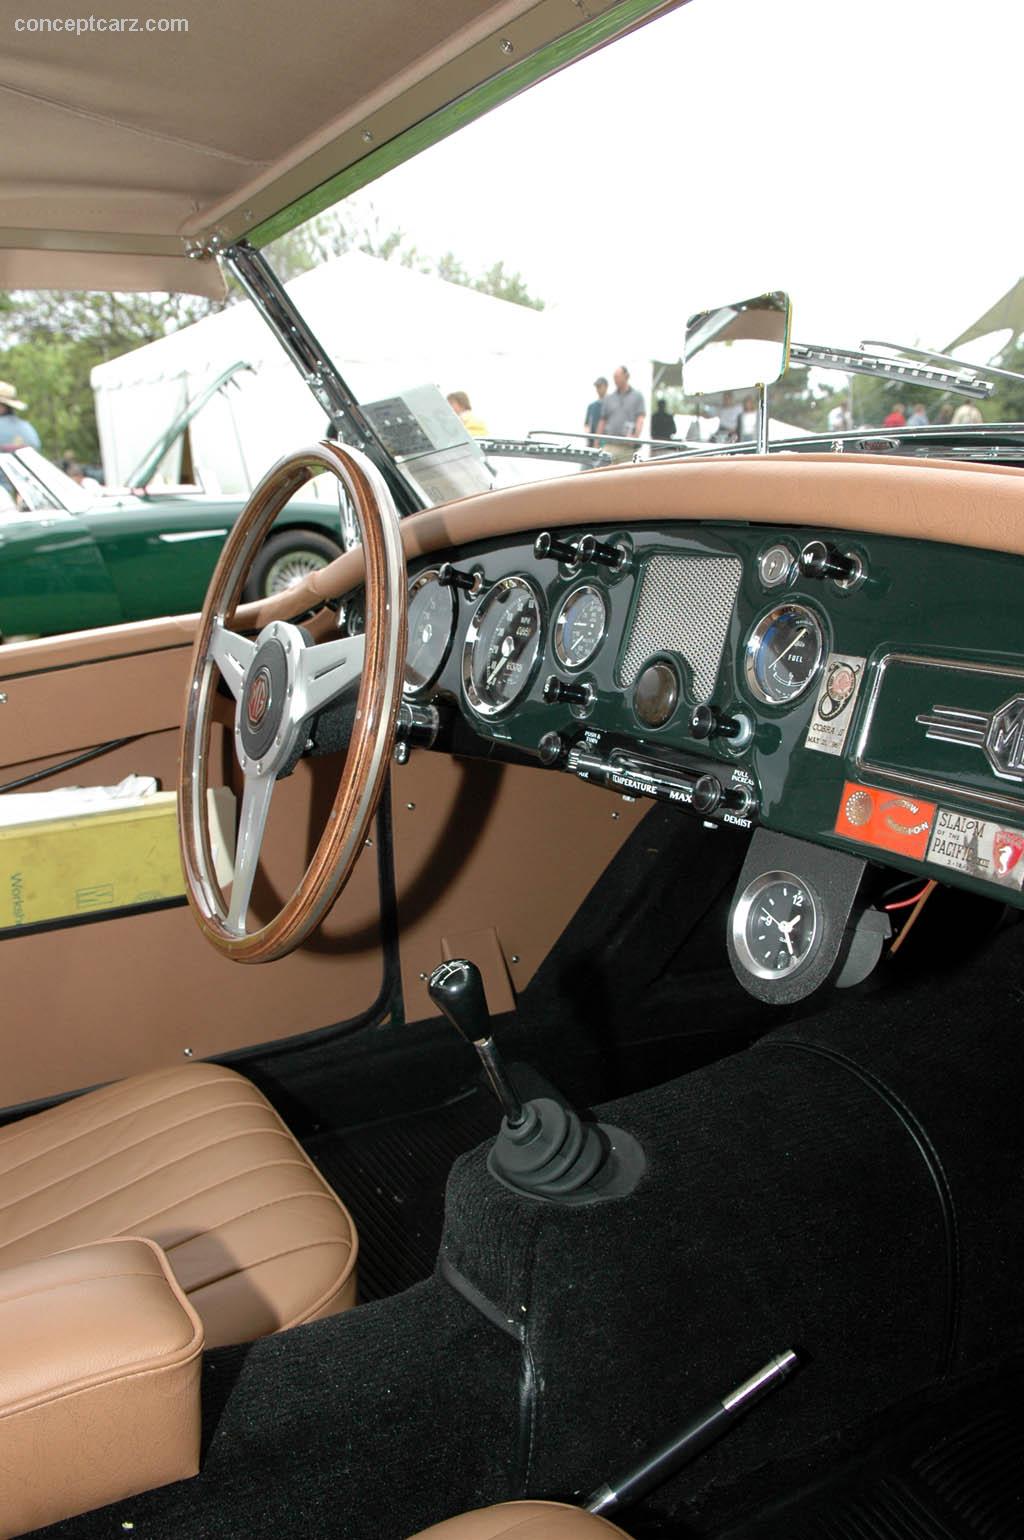 1959 MG MGA